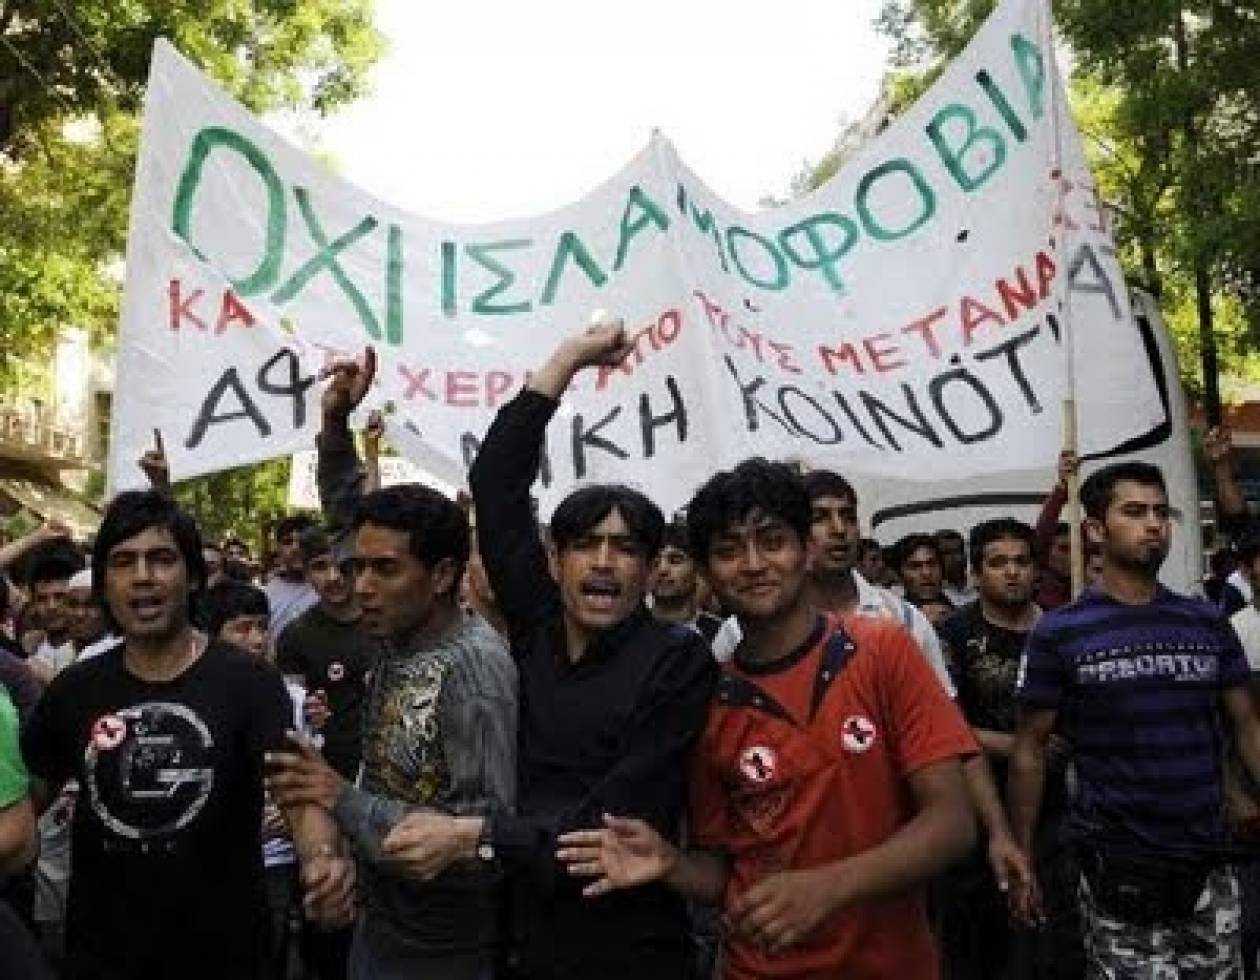 Επιστολή:«Εδειχναν την Ελληνική σημαία και φώναζαν: Αλάχ, αλάχ ακμπάρ»